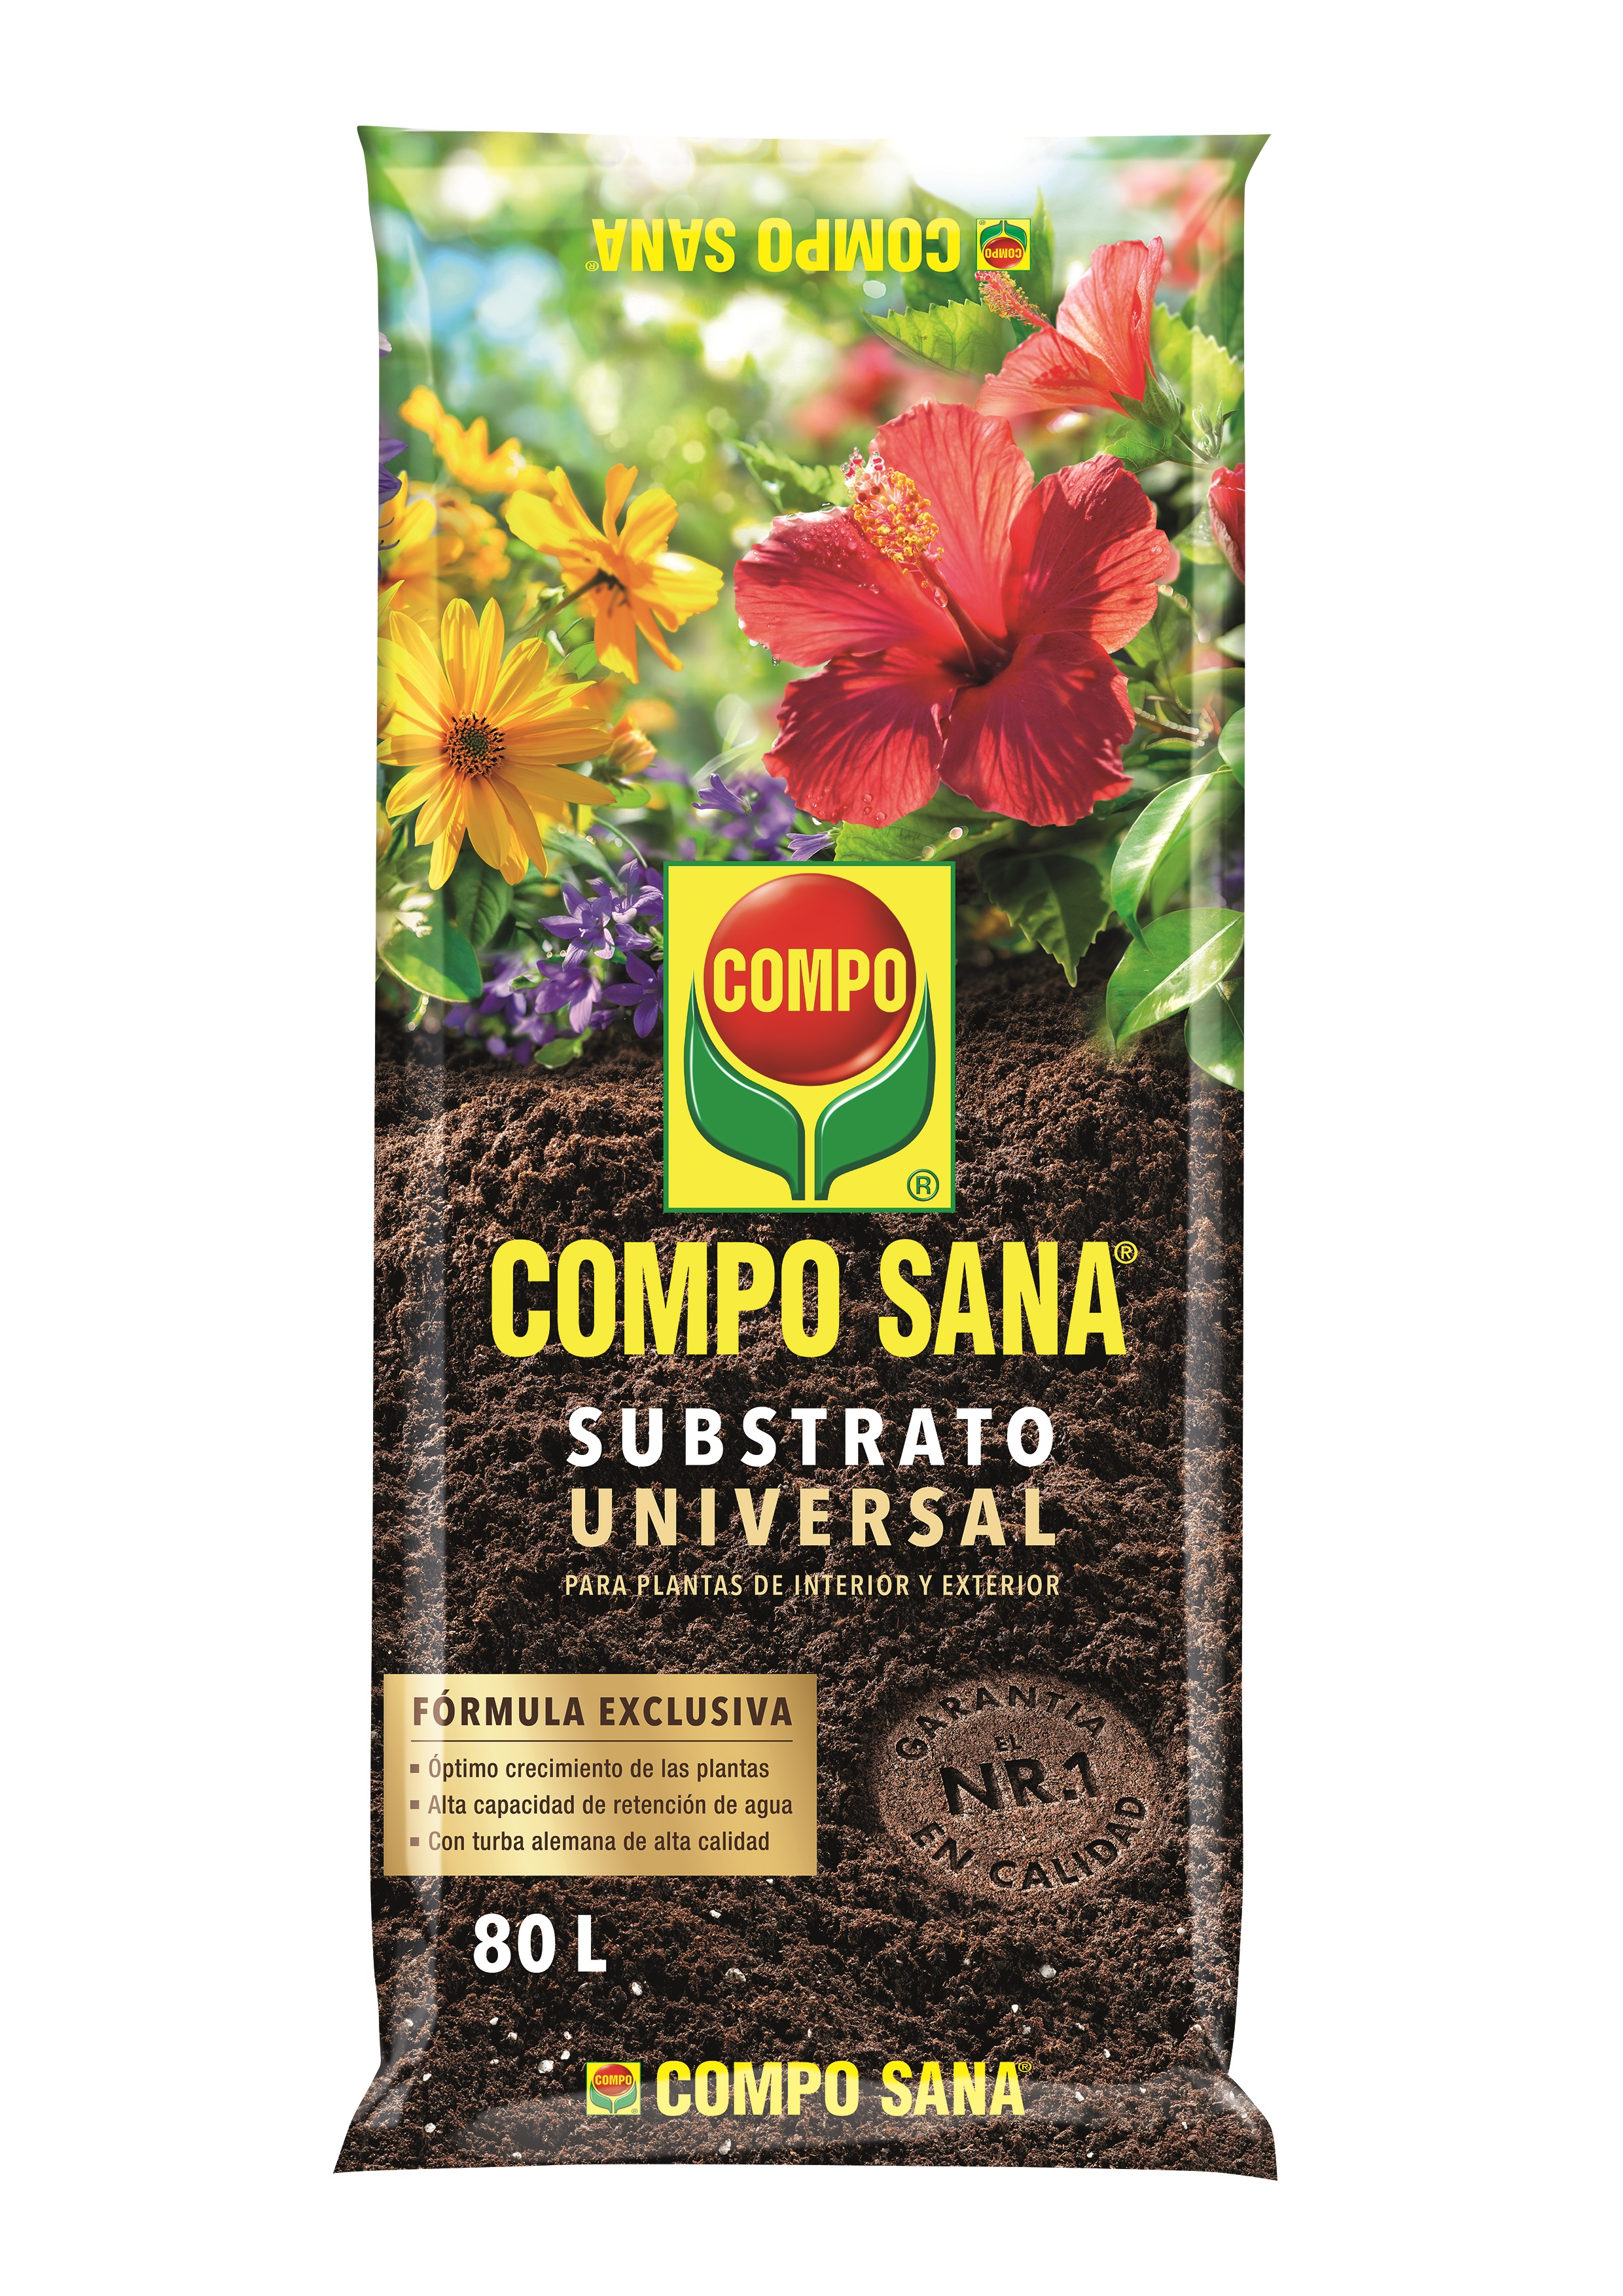 Sustrato universal compo sana para todo tipo de plantas interior y exterior 80l